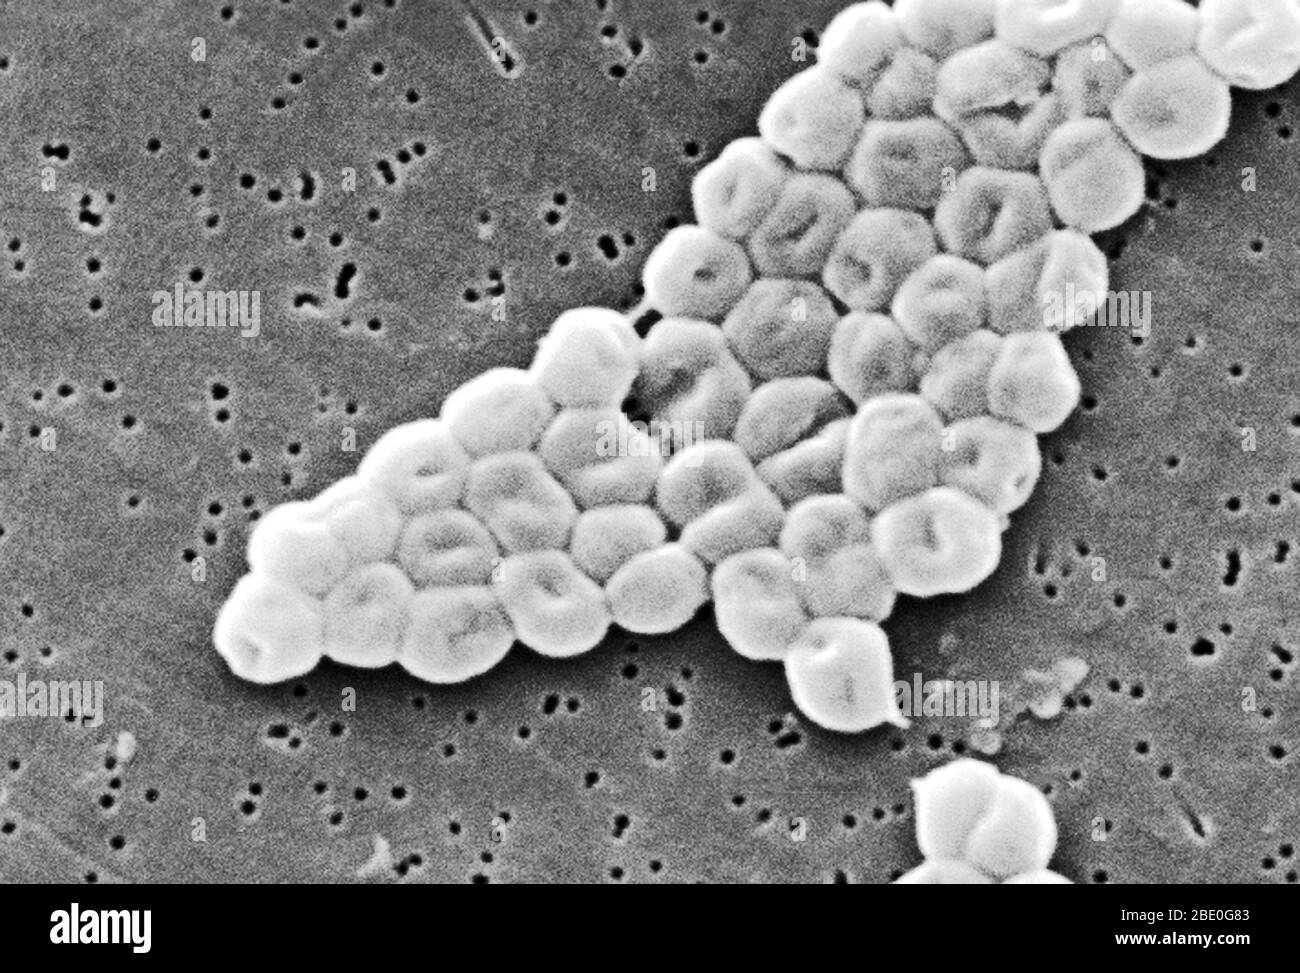 SEM représente un groupe fortement amplifié de bactéries Gram-négatives, non motiles Acinetobacter baumannii; Mag - 13331x. Les membres du genre Acinetobacter sont des tiges non motiles, de 1 à 1,5 µm de diamètre et de 1,5 à 2,5 µm de longueur, qui deviennent sphériques en forme pendant leur phase stationnaire de croissance. Acinetobacter baumannii est une espèce de bactéries pathogènes, appelée bactérie aérobie Gram-négative, résistante à la plupart des antibiotiques. En raison de sa résistance au traitement des médicaments, certaines estimations indiquent que la maladie tue chaque année des dizaines de milliers de patients hospitaliers américains. La maladie c Banque D'Images